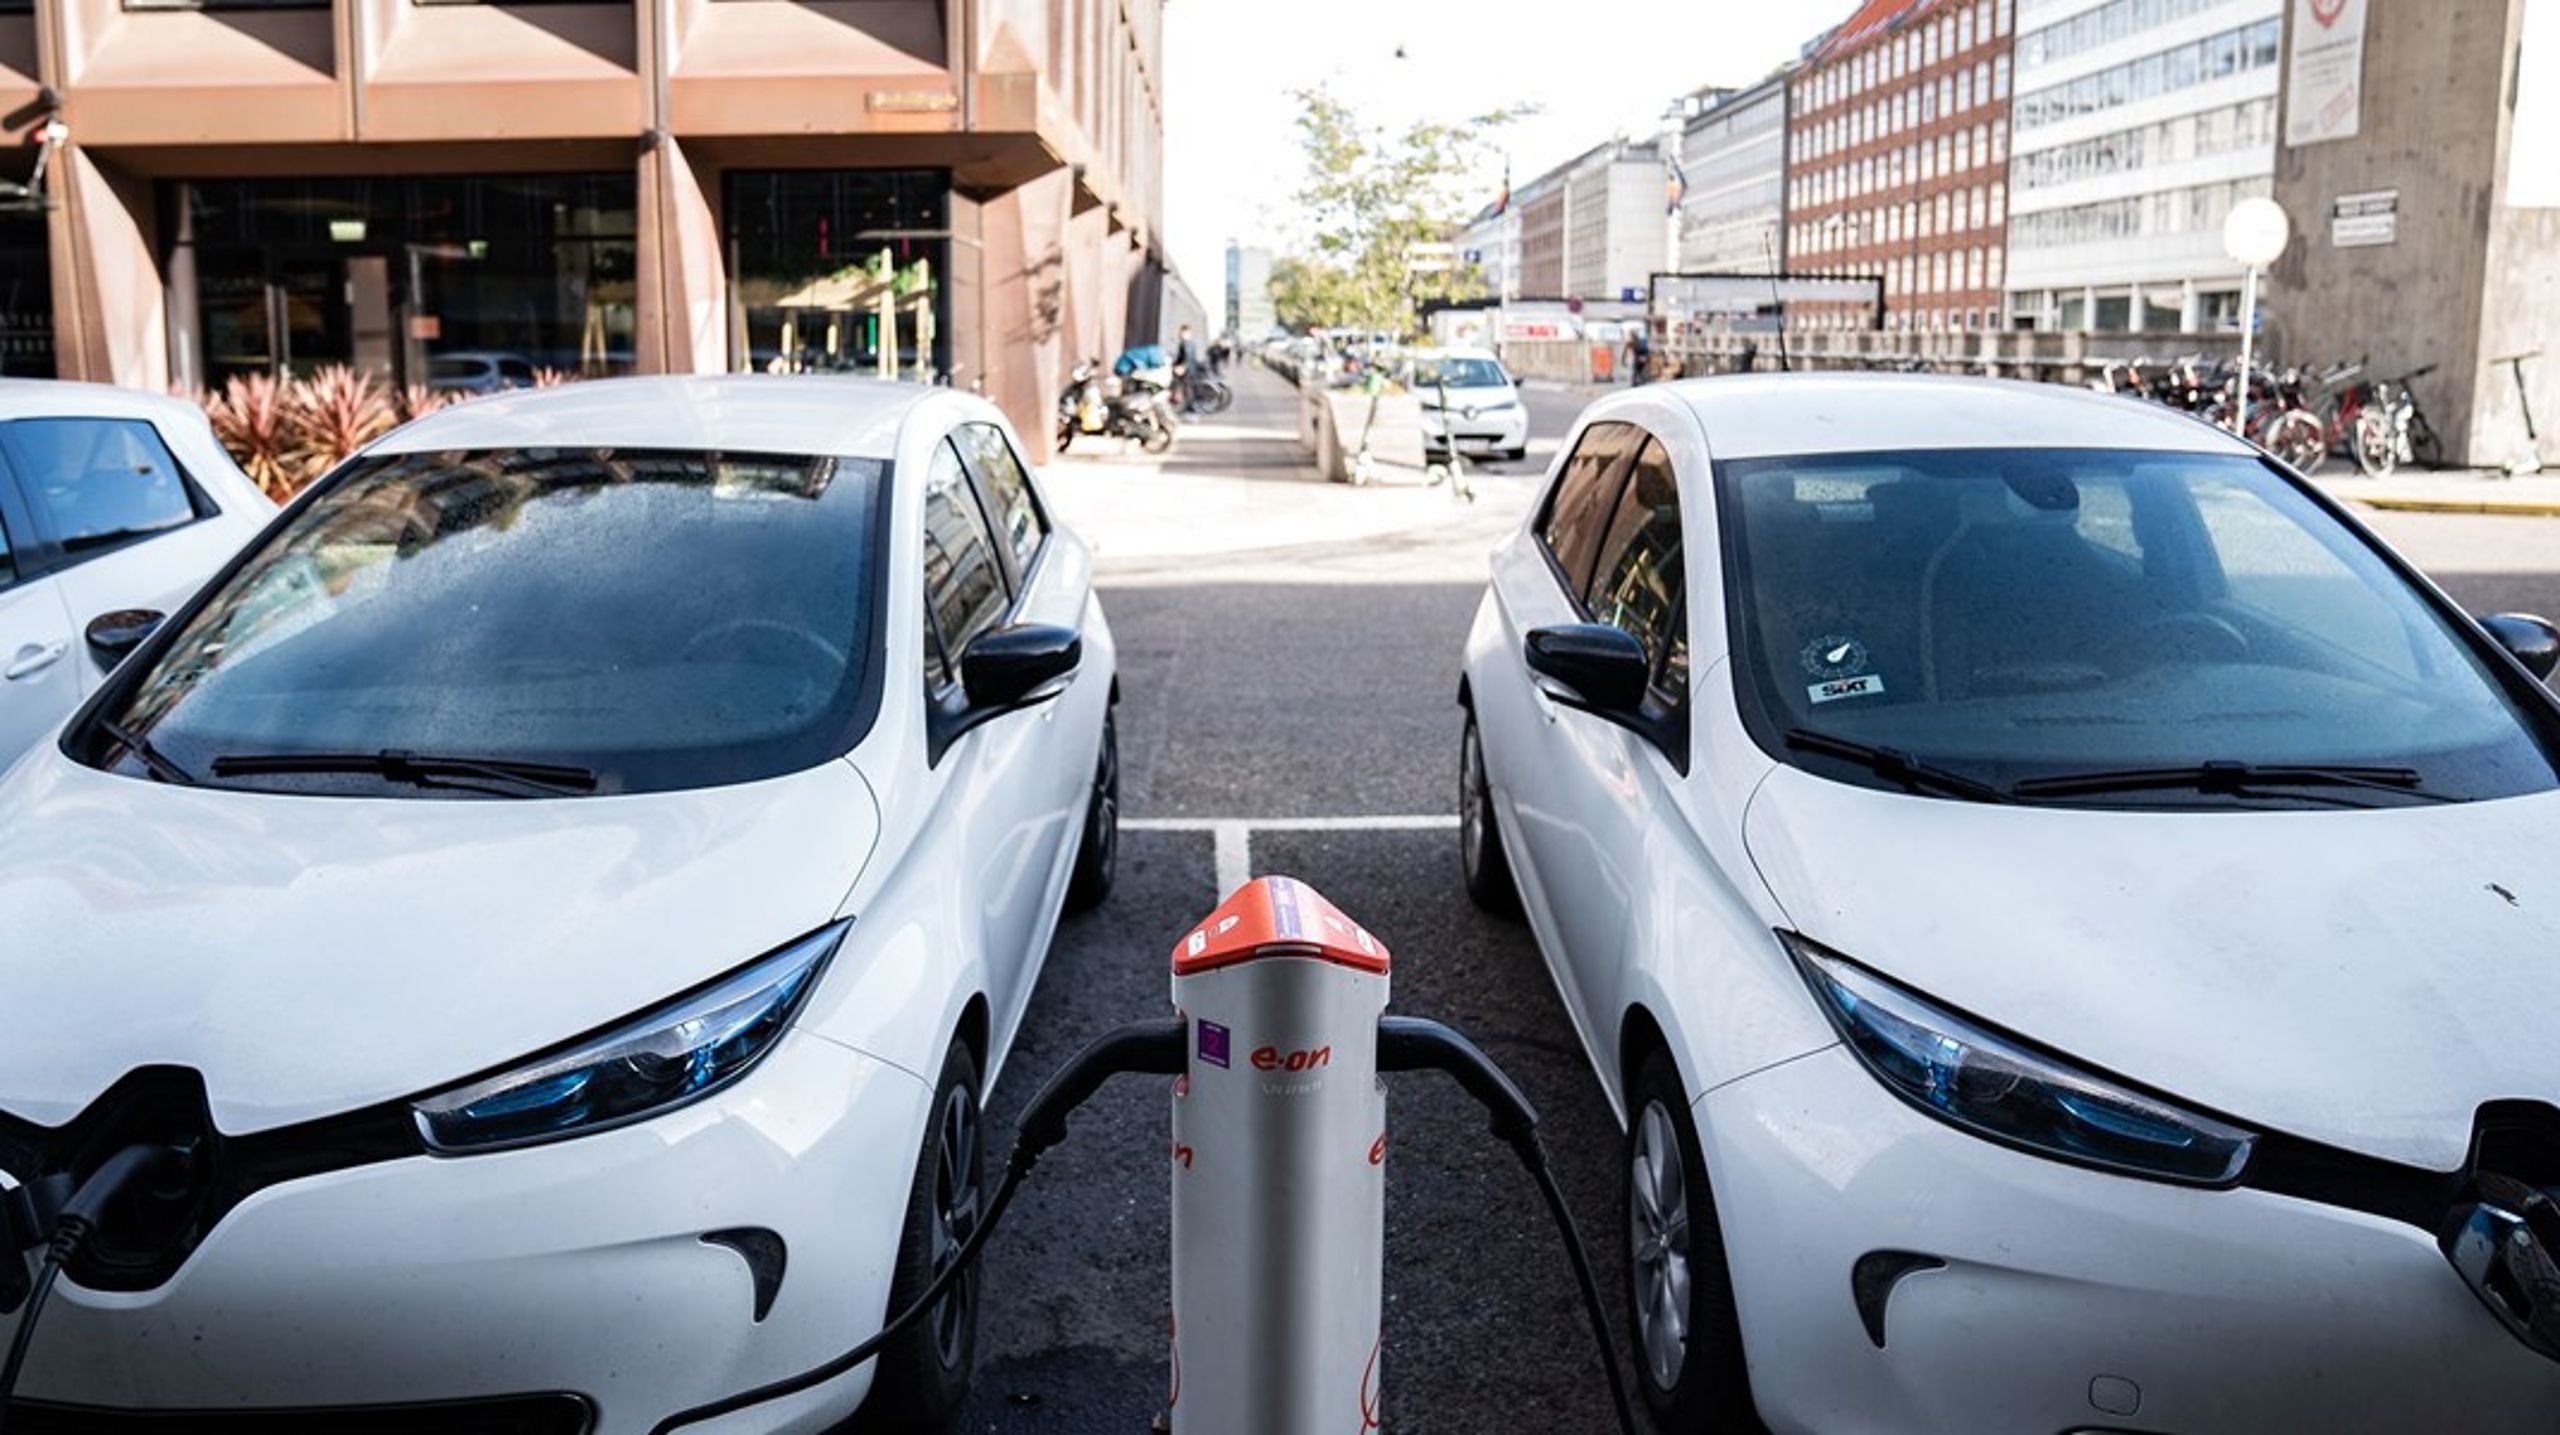 Fra 2019 til 2020 er antallet af el- og plug-in hybridbiler i København næsten fordoblet, skriver kommunen i del 1 af handlingsplanen for ladeinfrastruktur.<br>